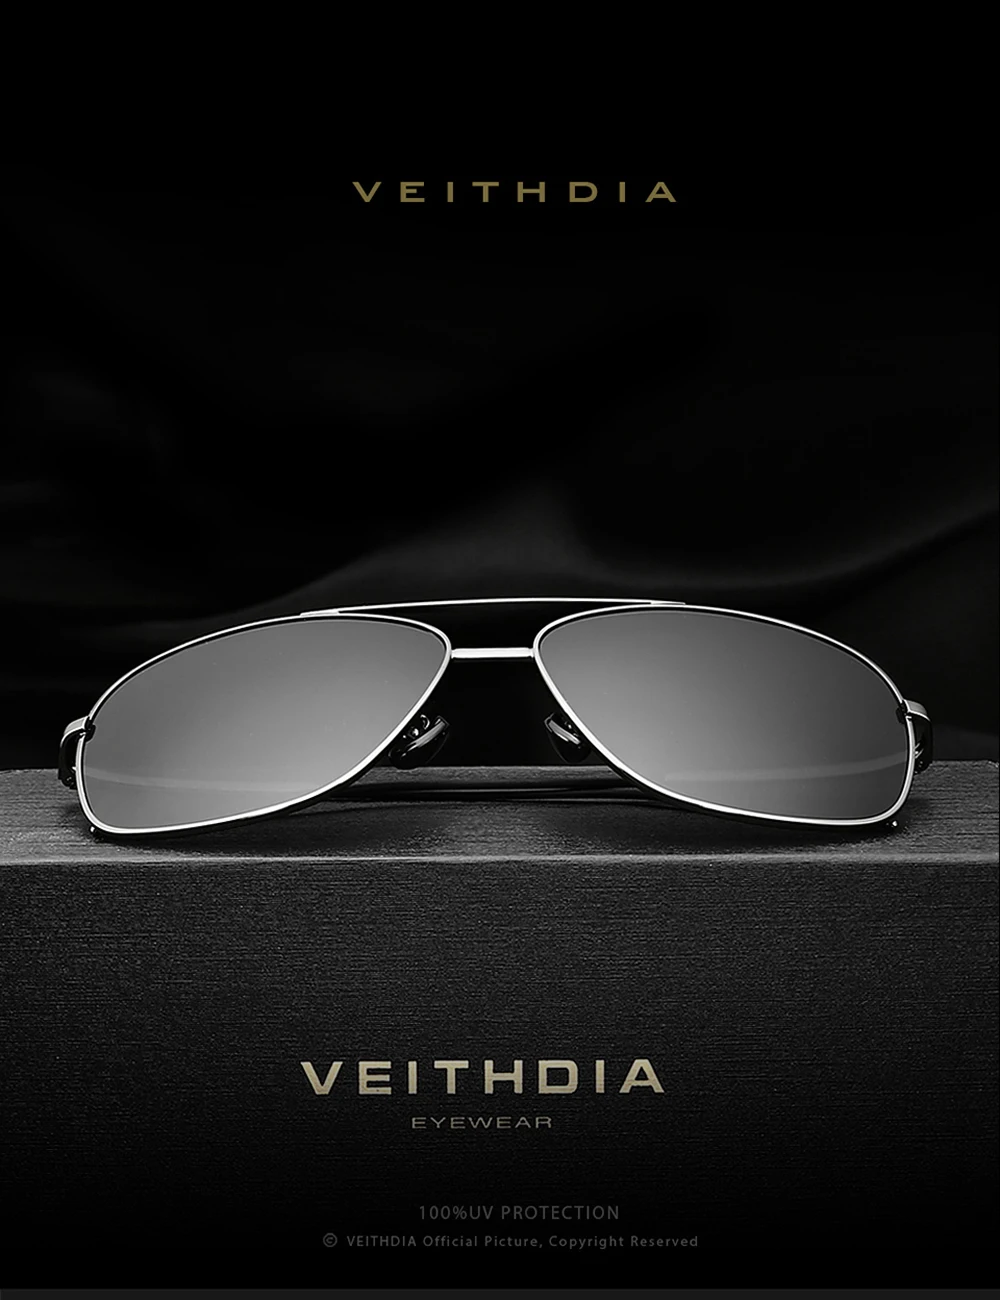 Мужские солнцезащитные очки VEITHDIA, винтажные прямоугольные очки с поляризационными стеклами, степень защиты UV400, для мужчин и женщин, V2495